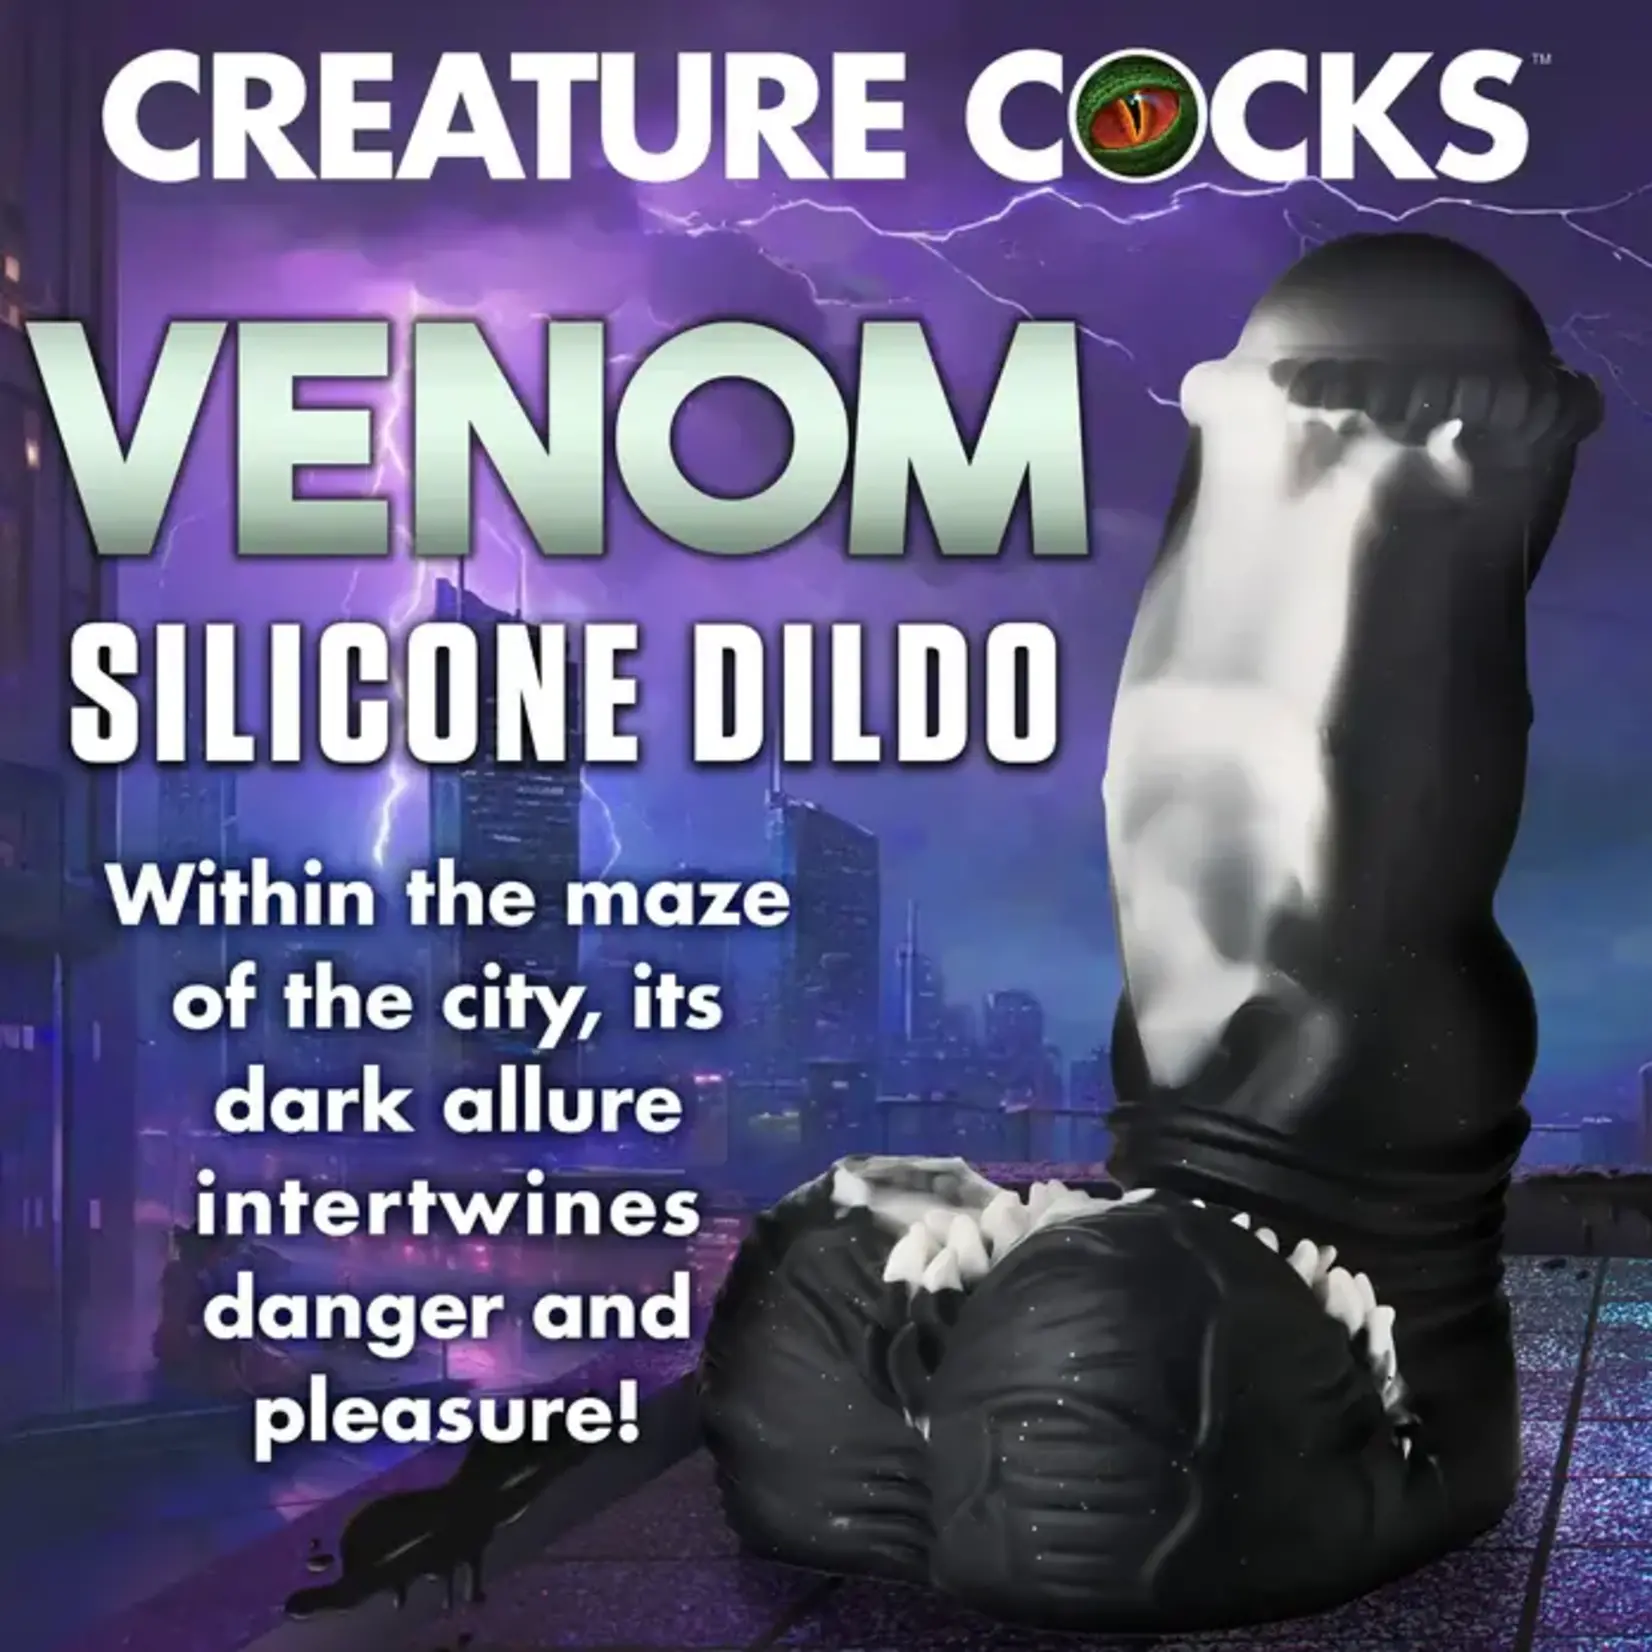 Creature Cocks Venom Silicone Dildo - Black/White